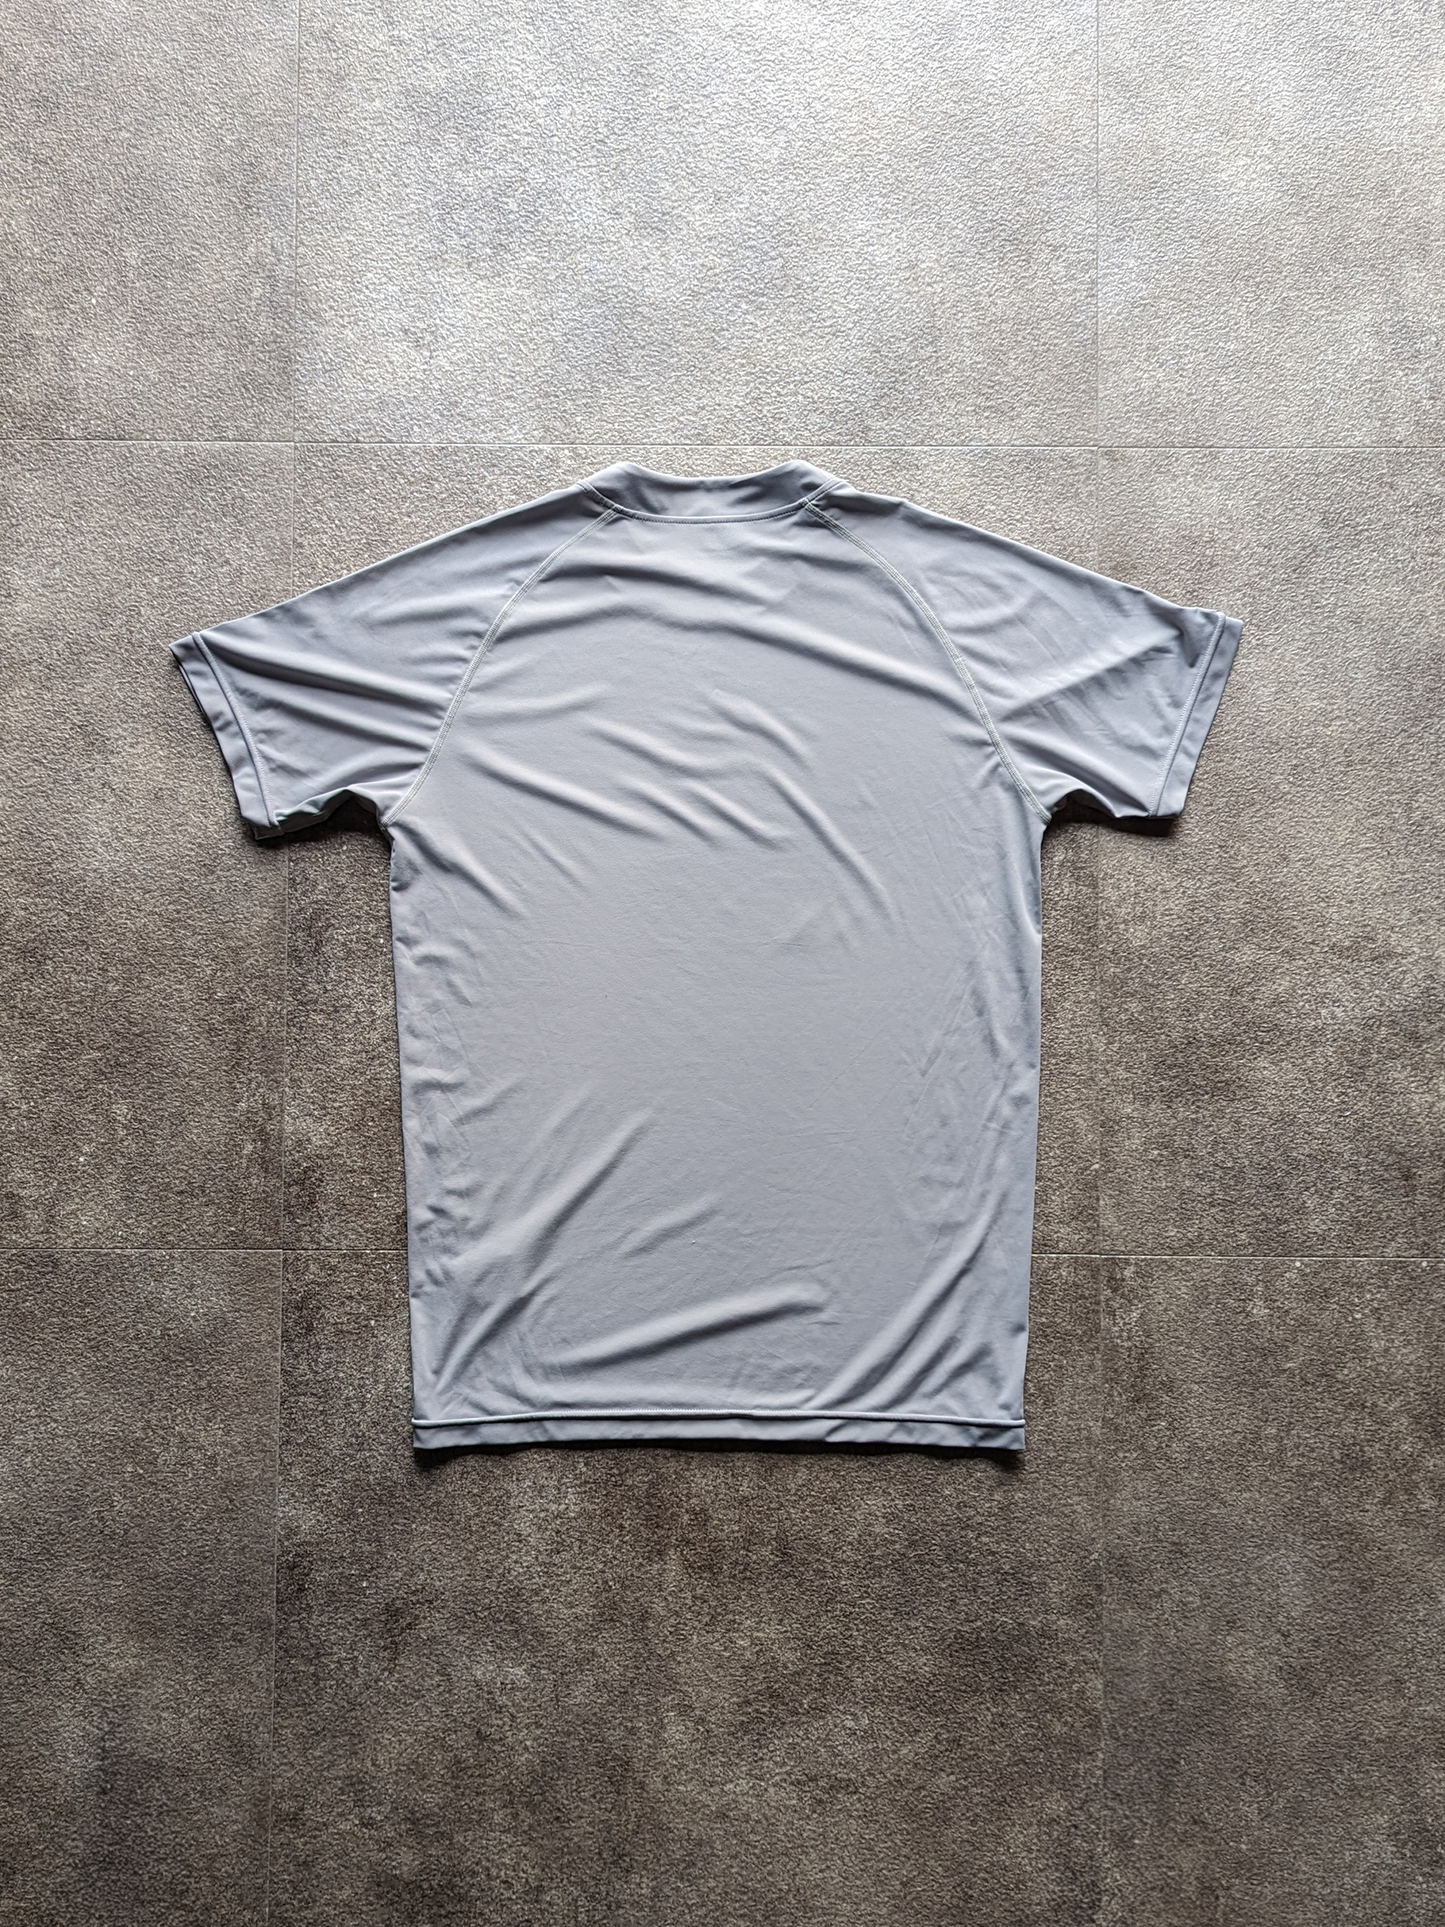 ストレッチスムースTシャツ ライトグレー 3Dシリコンロゴ